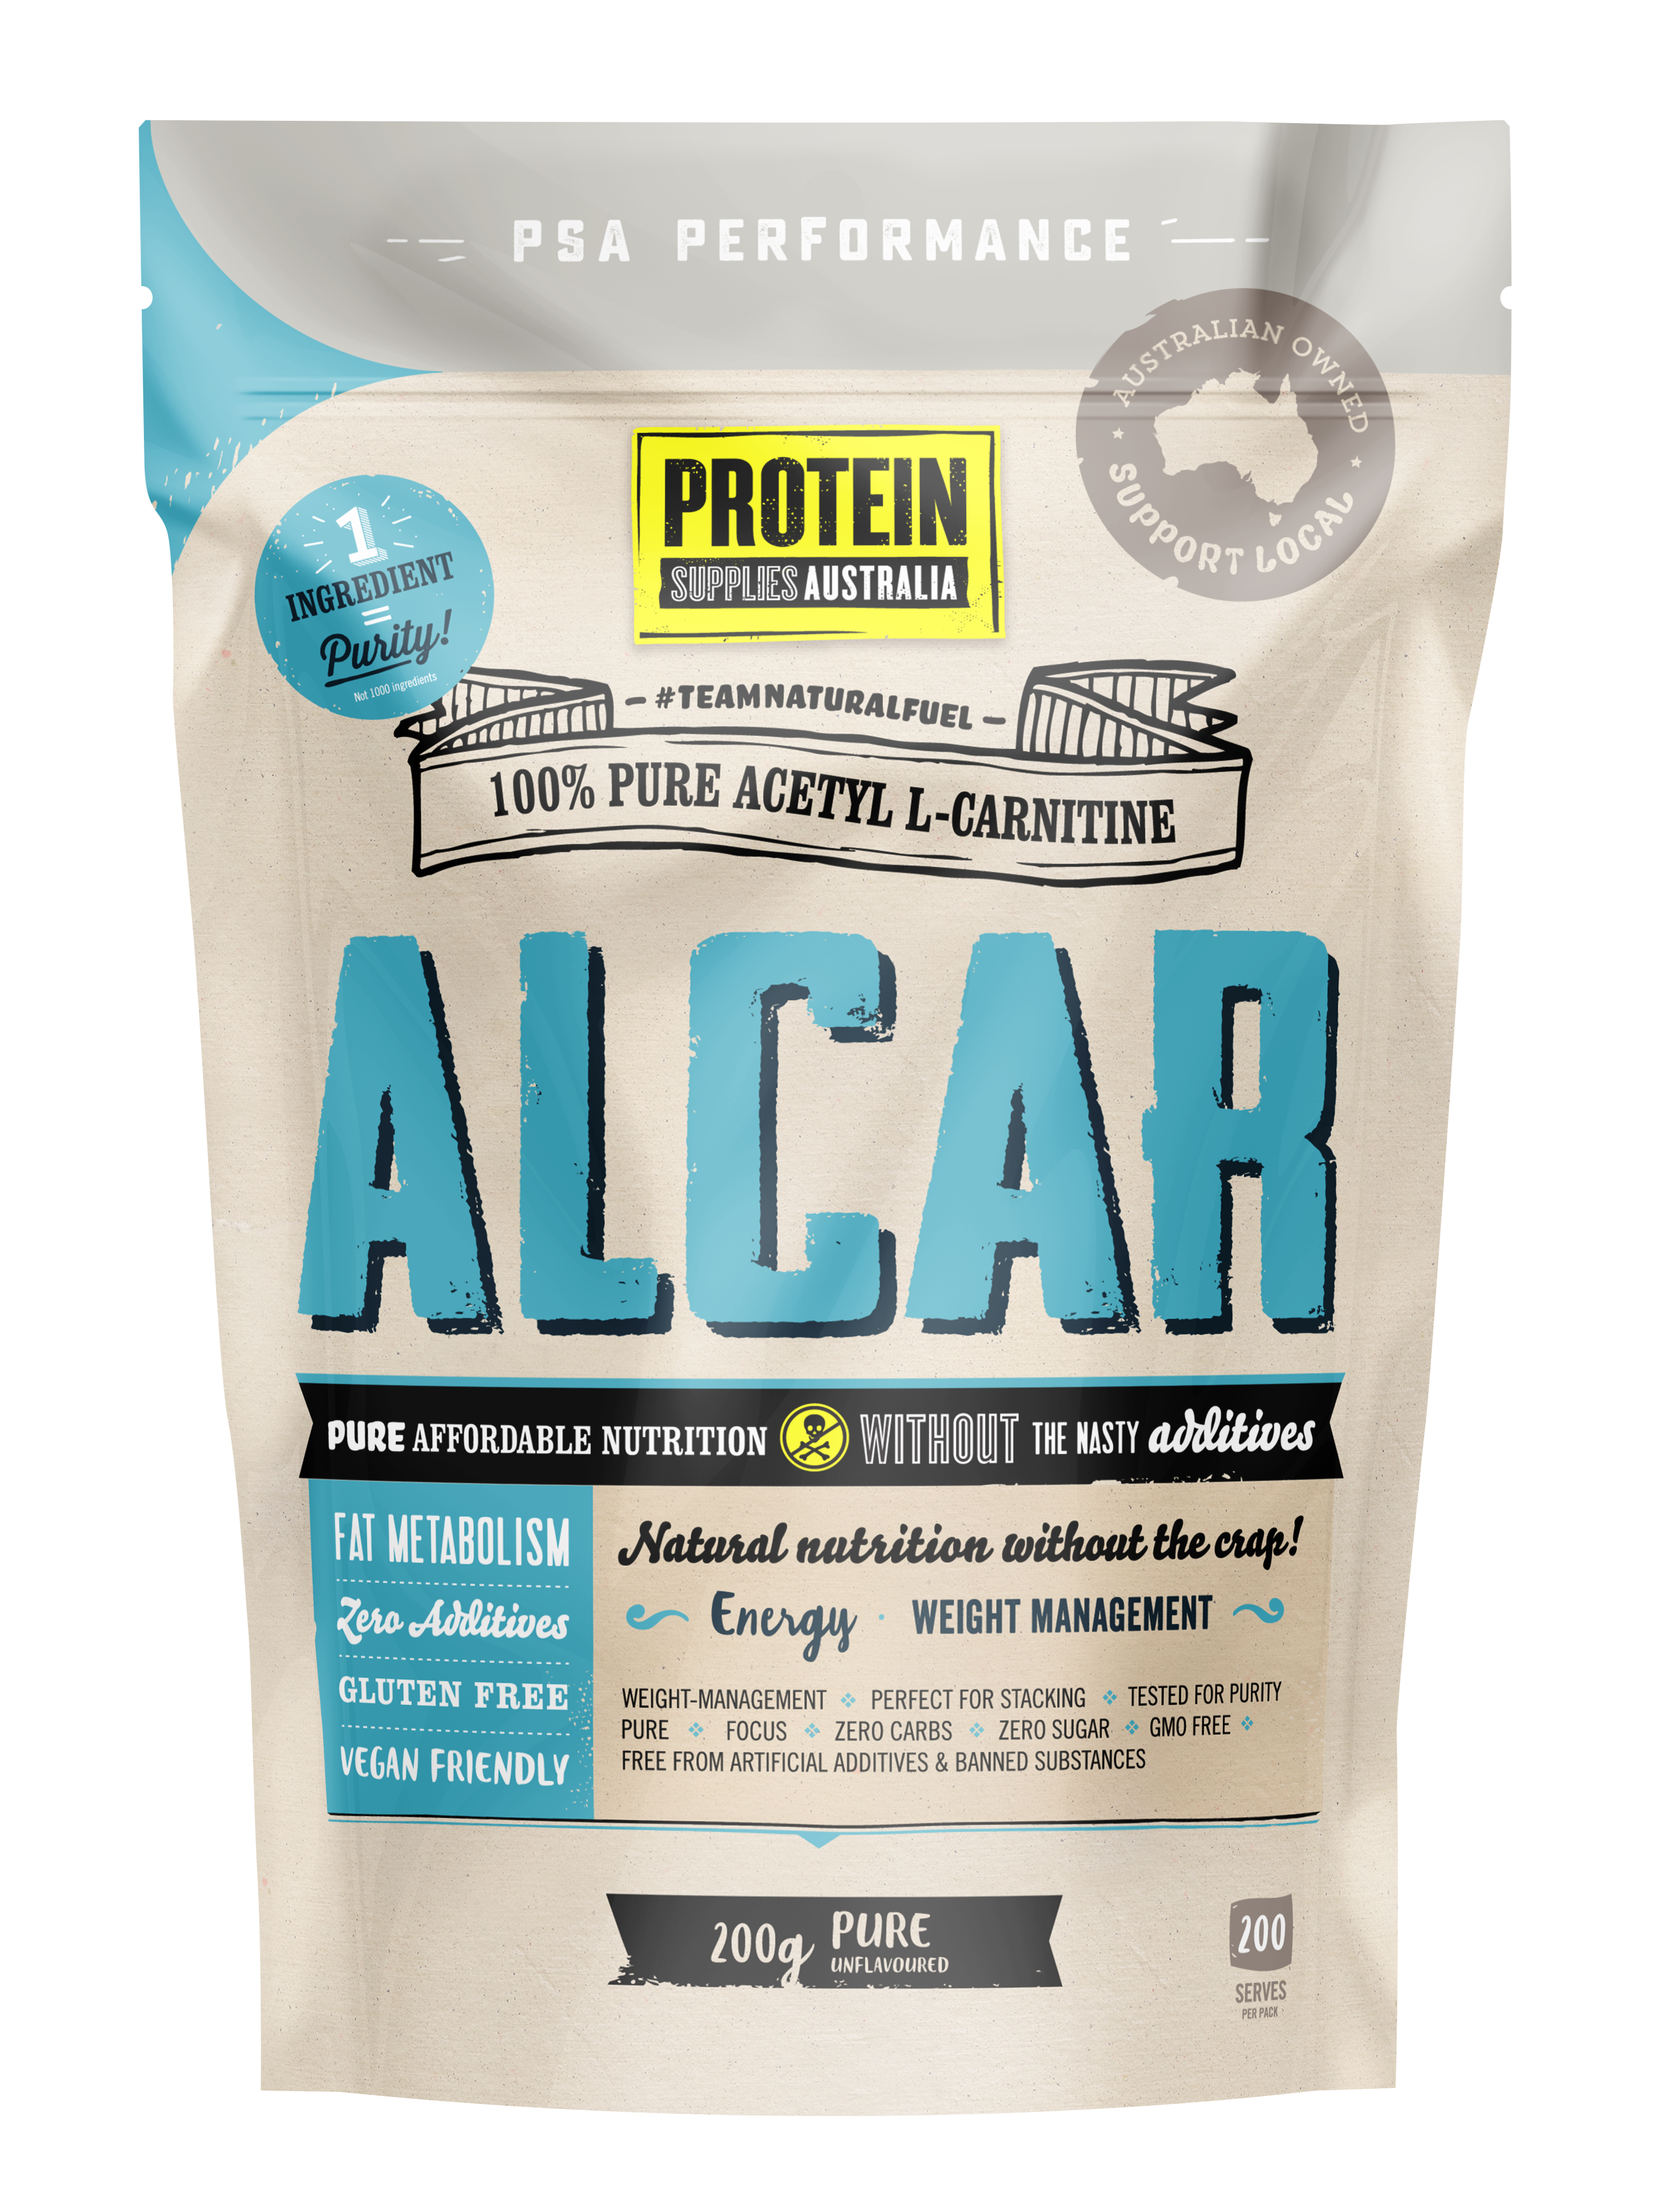 ALCAR - Pure - Protein Supplies Australia